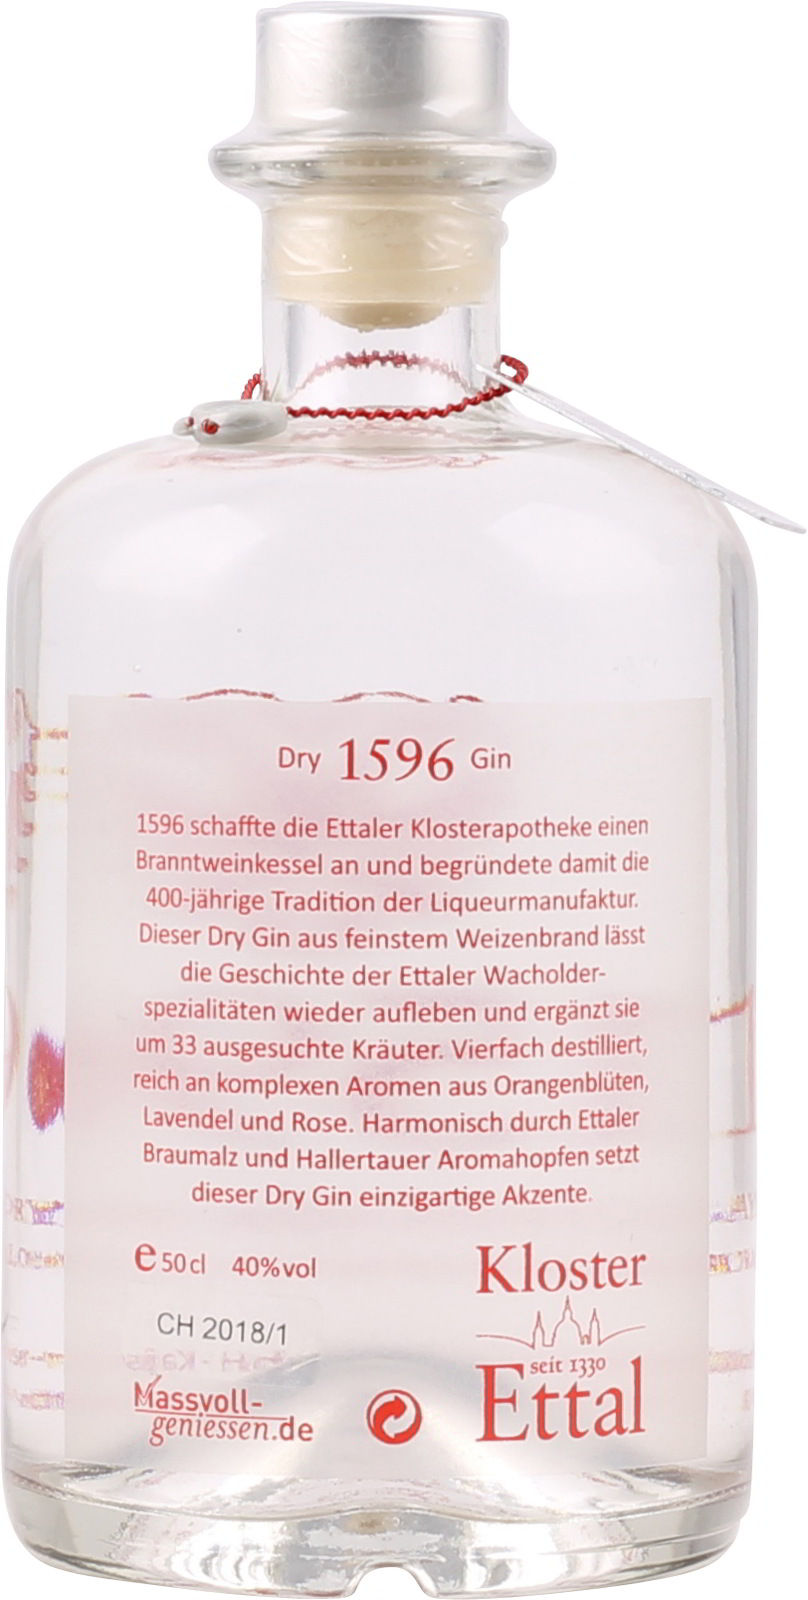 1596 Ettaler 0,5 ei Gin Dry Bayerischer % 40 Vol. Liter